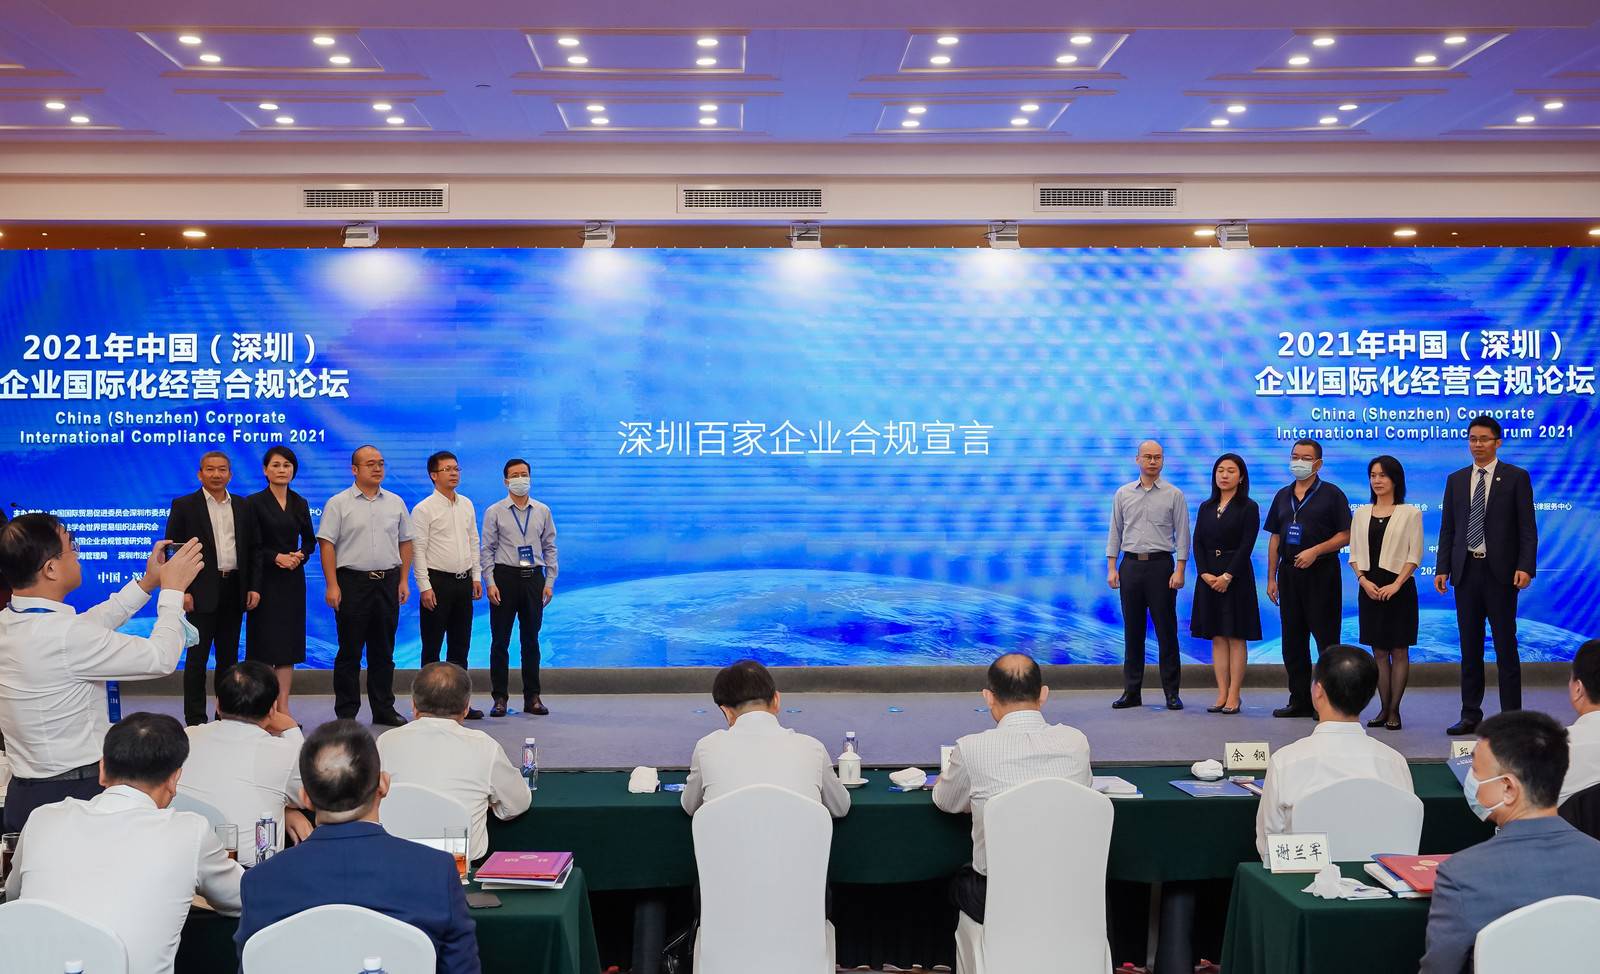 左一suncitygroup—深圳企业百家合规宣言代表企业.jpg